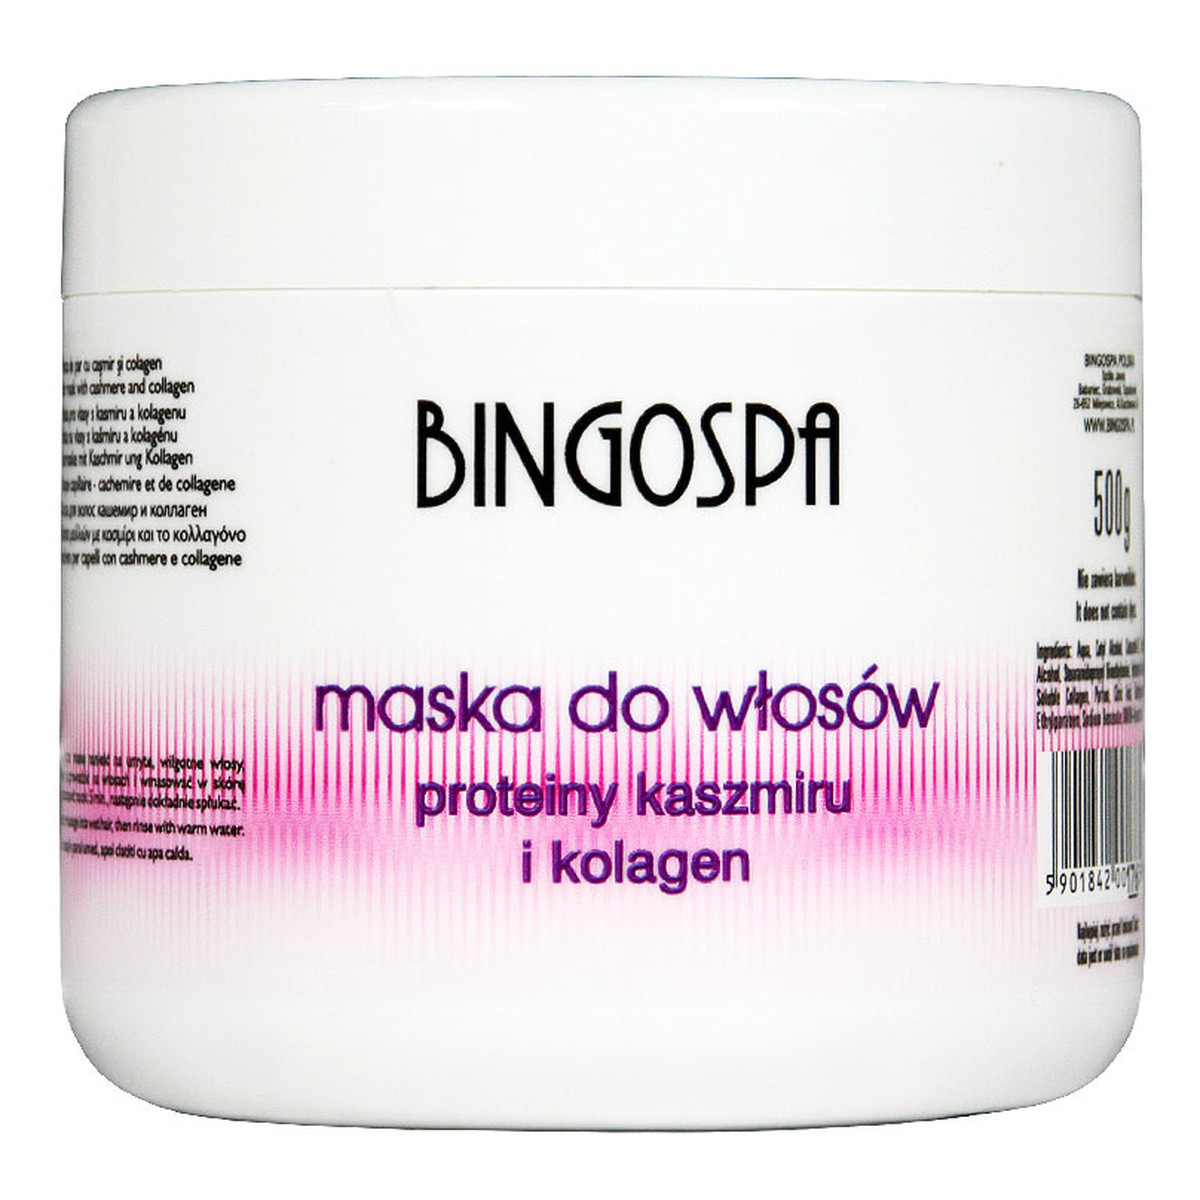 BingoSpa Maska do włosów z proteinami kaszmiru i kolagenu 500g